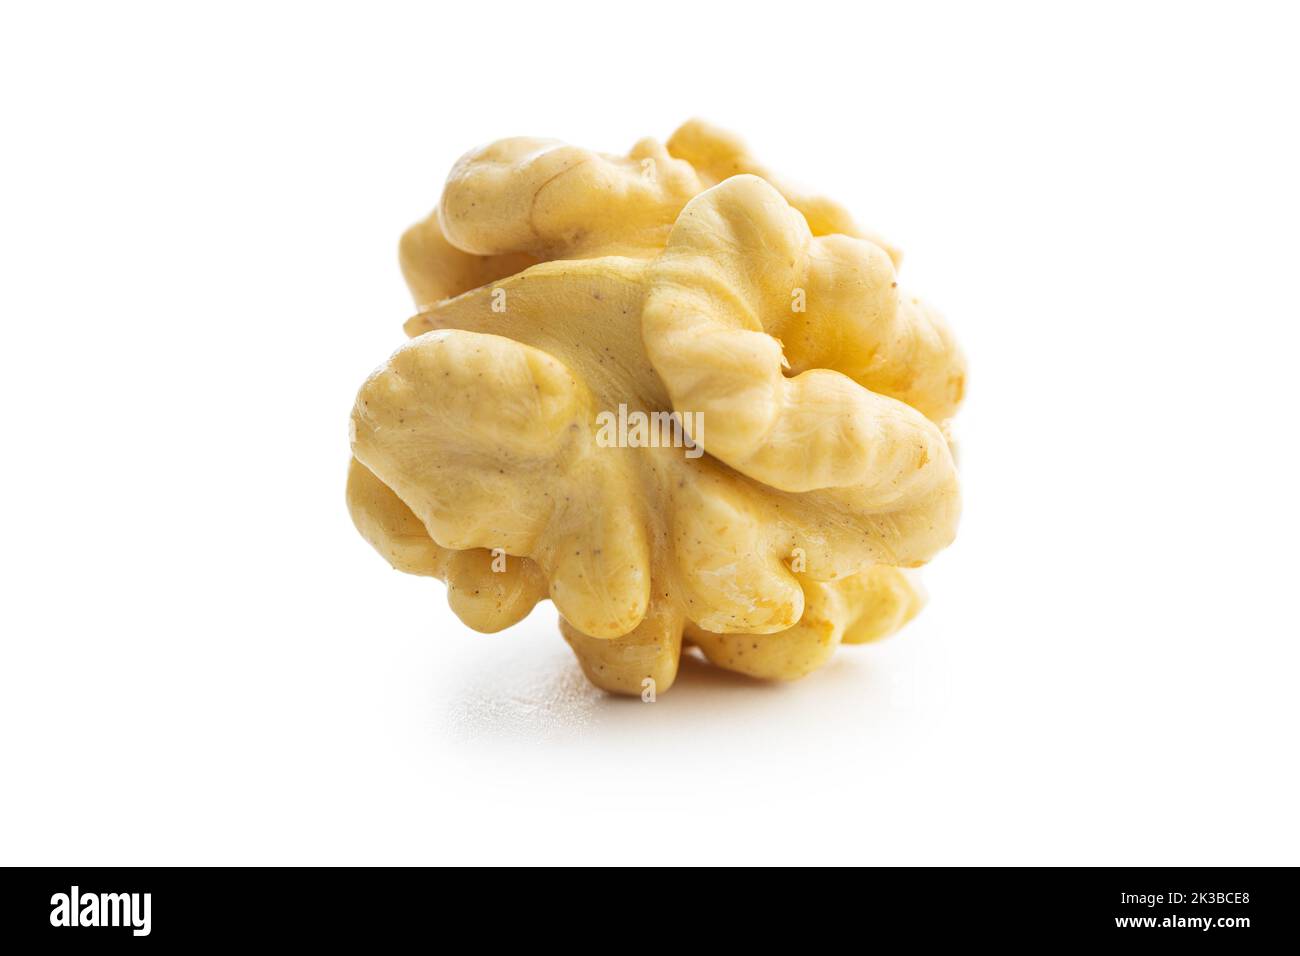 Peeled walnut isolated on the white background. Stock Photo